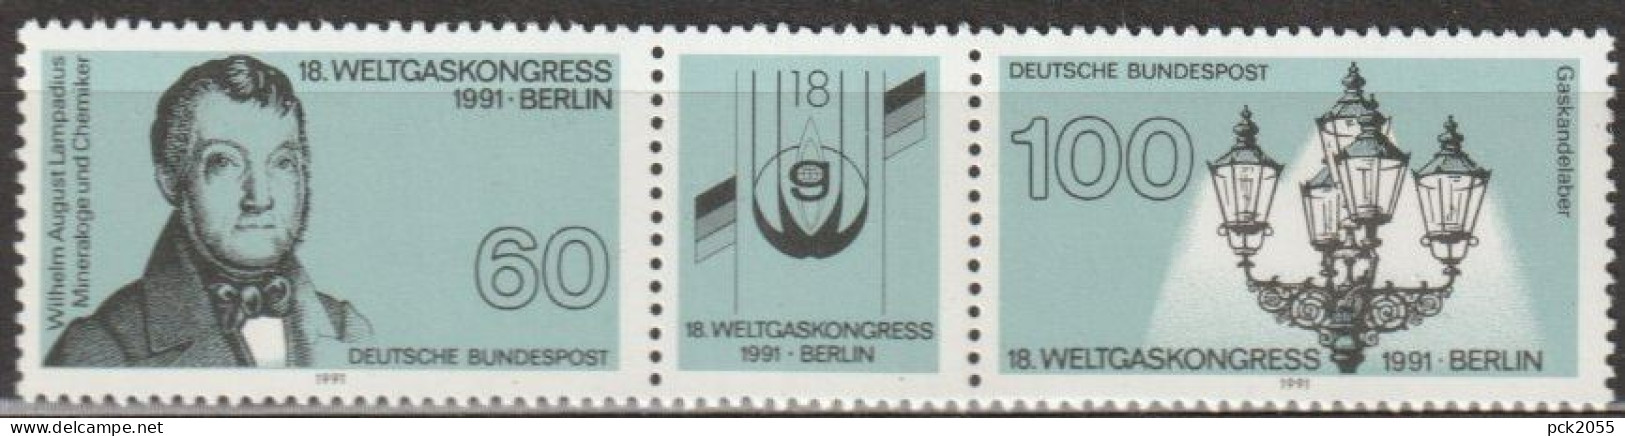 BRD 1991 MiNr.1537 - 1538 3er Streifen ** Postfrisch Weltgaskongress (A2574 )günstige Versandkoste - Unused Stamps